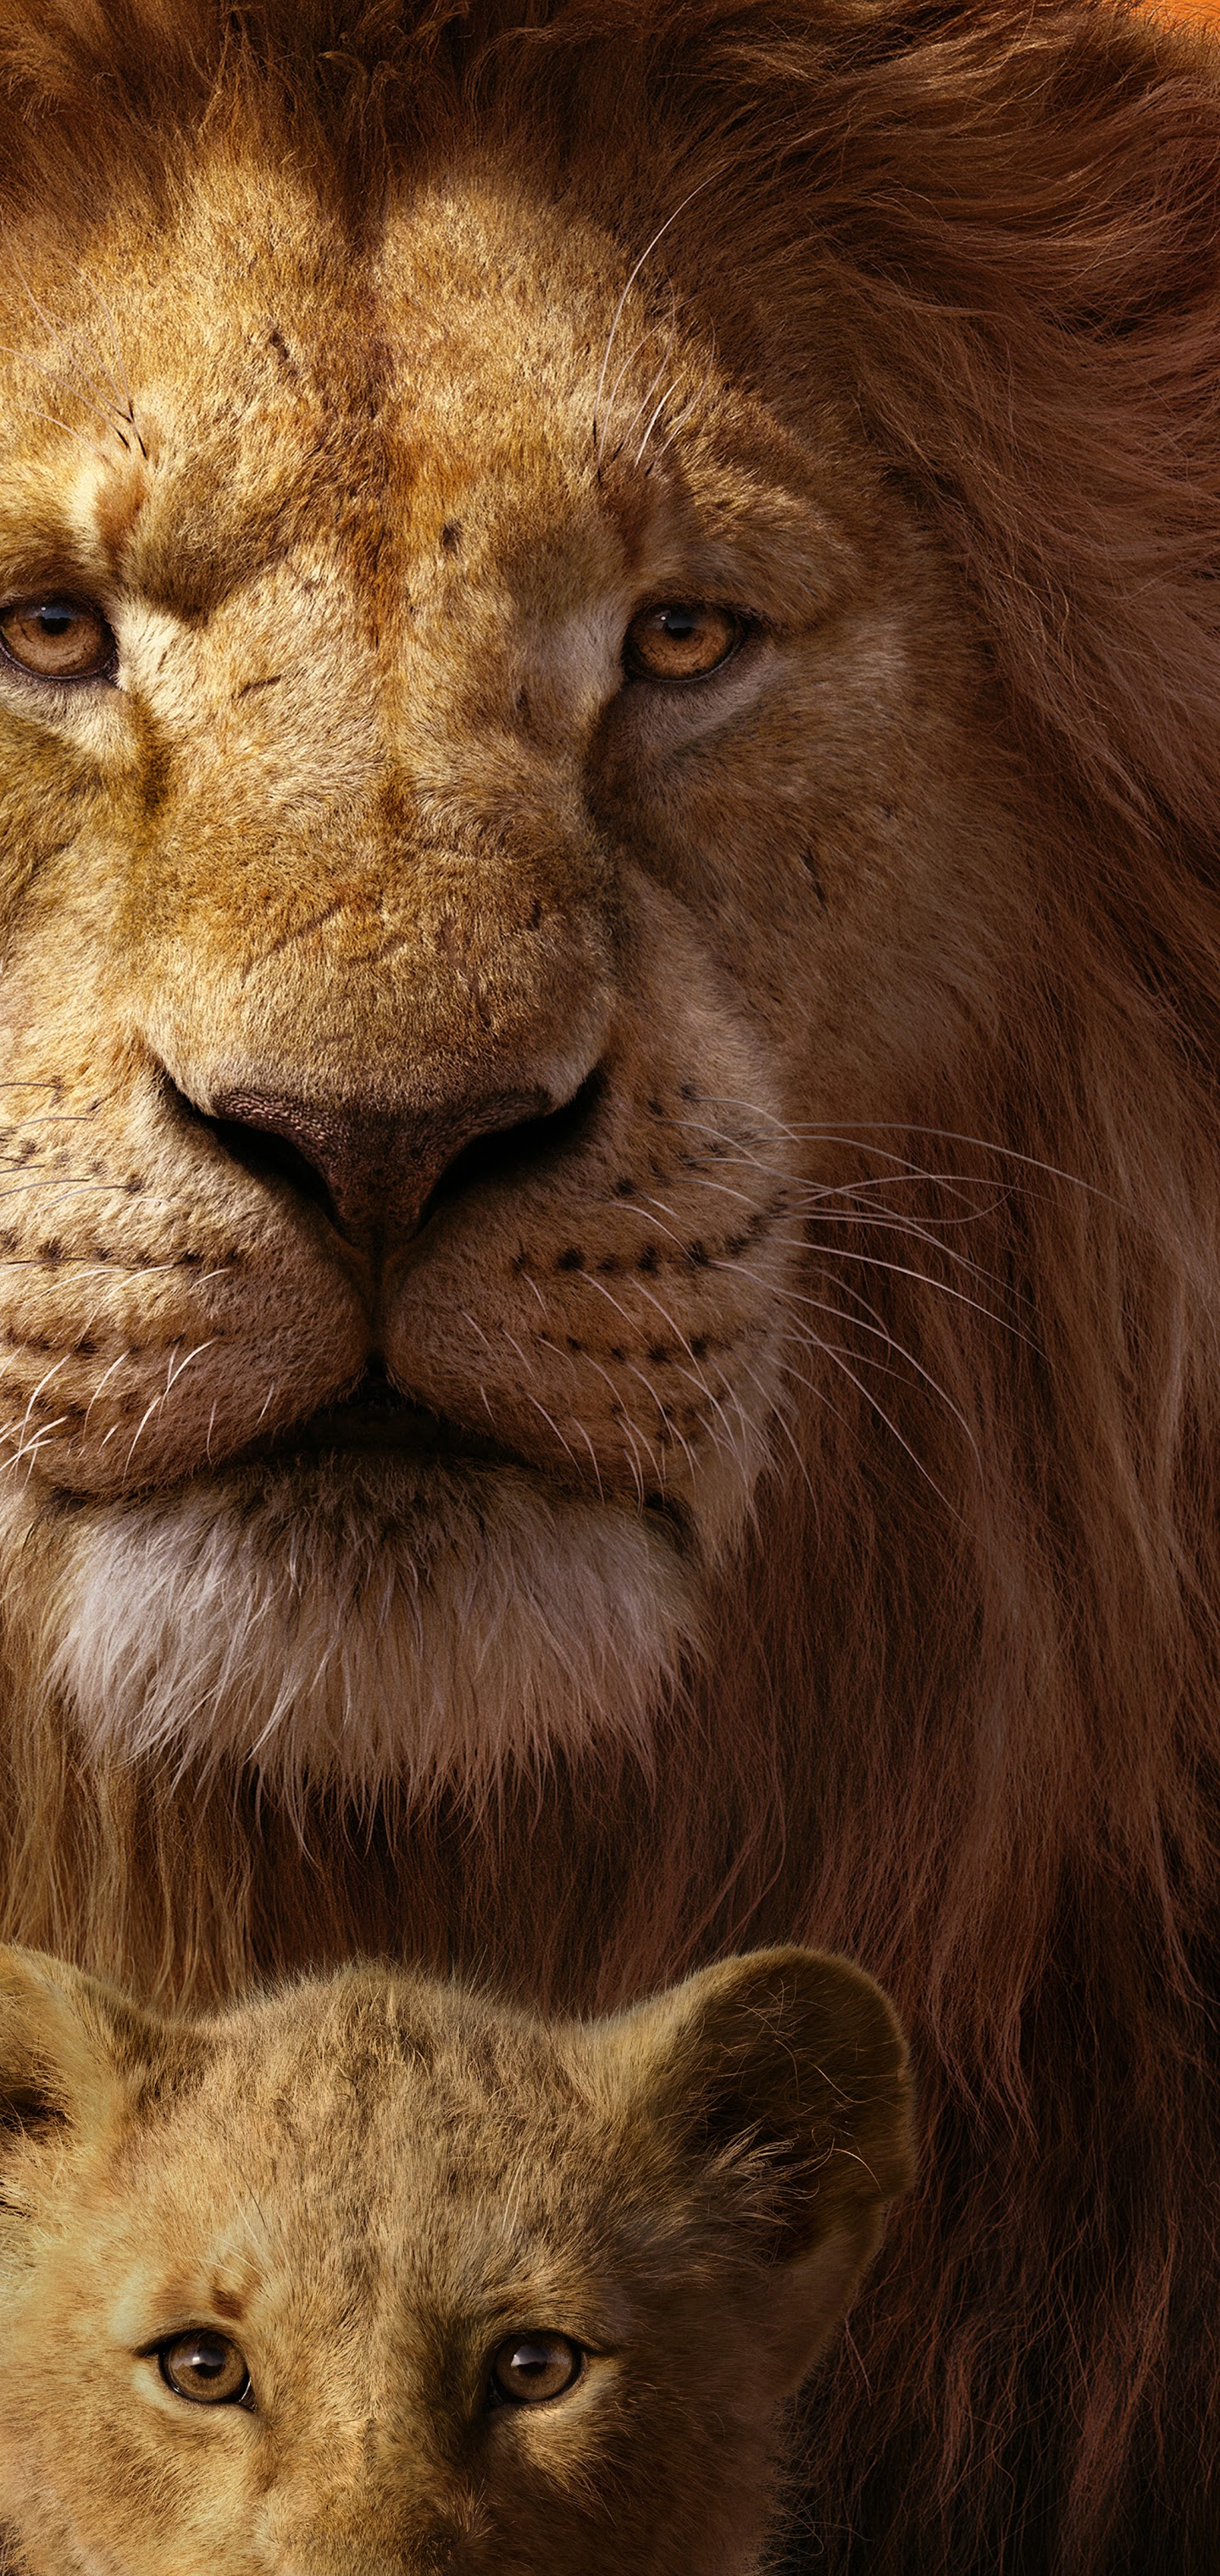 The Lion King, 2019, Mufasa, Simba, 8k, - Lion King 2019 Simba And Mufasa - HD Wallpaper 